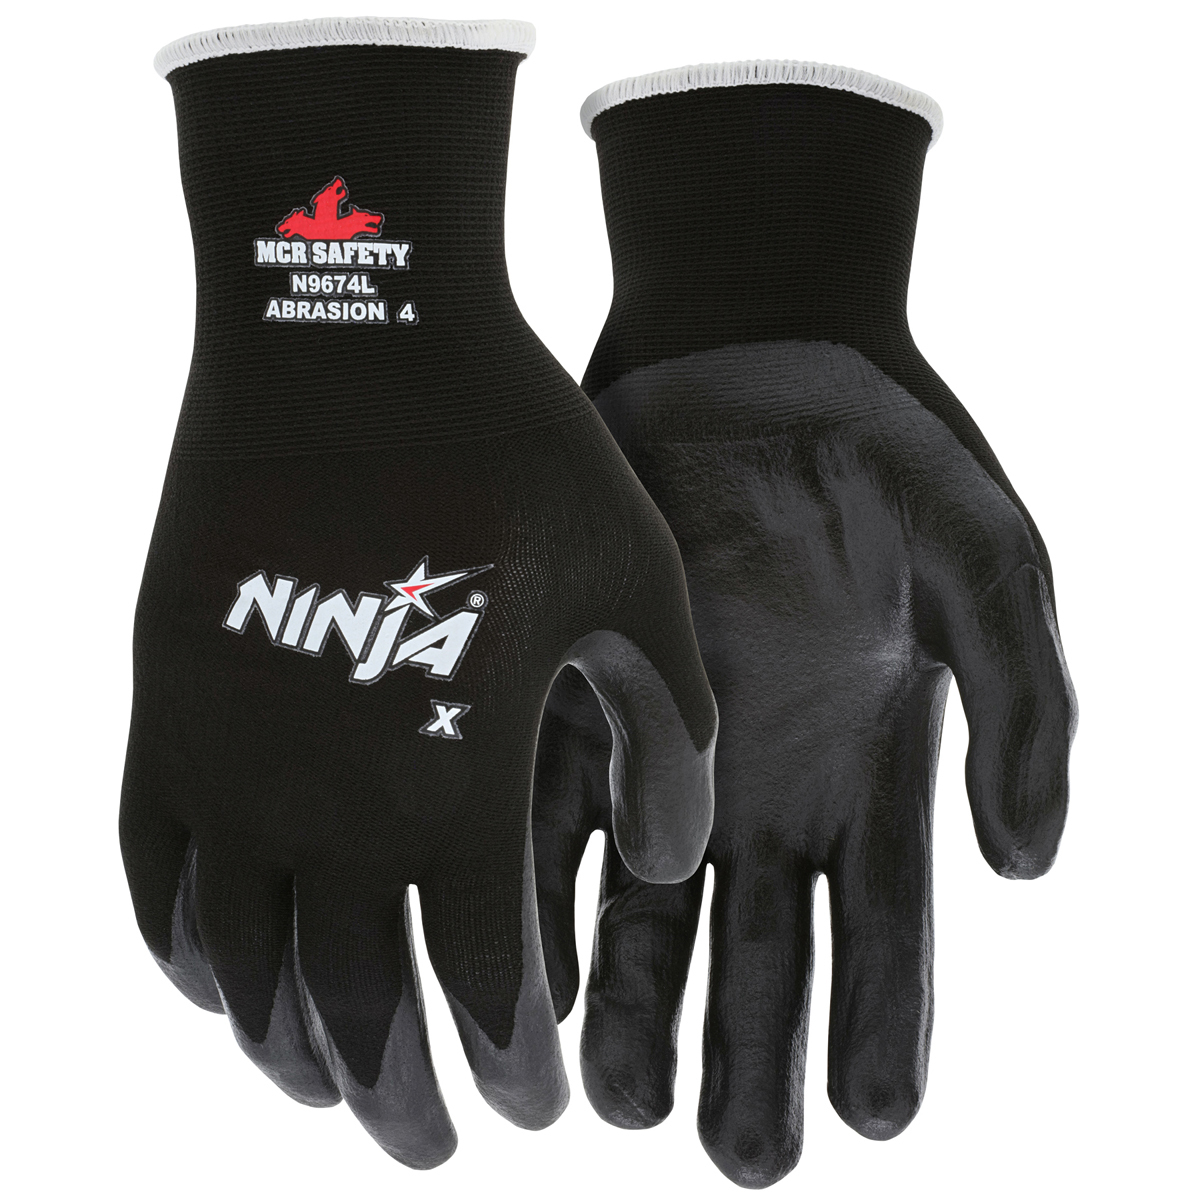 Ninja Force Polyurethane Coated Gloves Large Gray